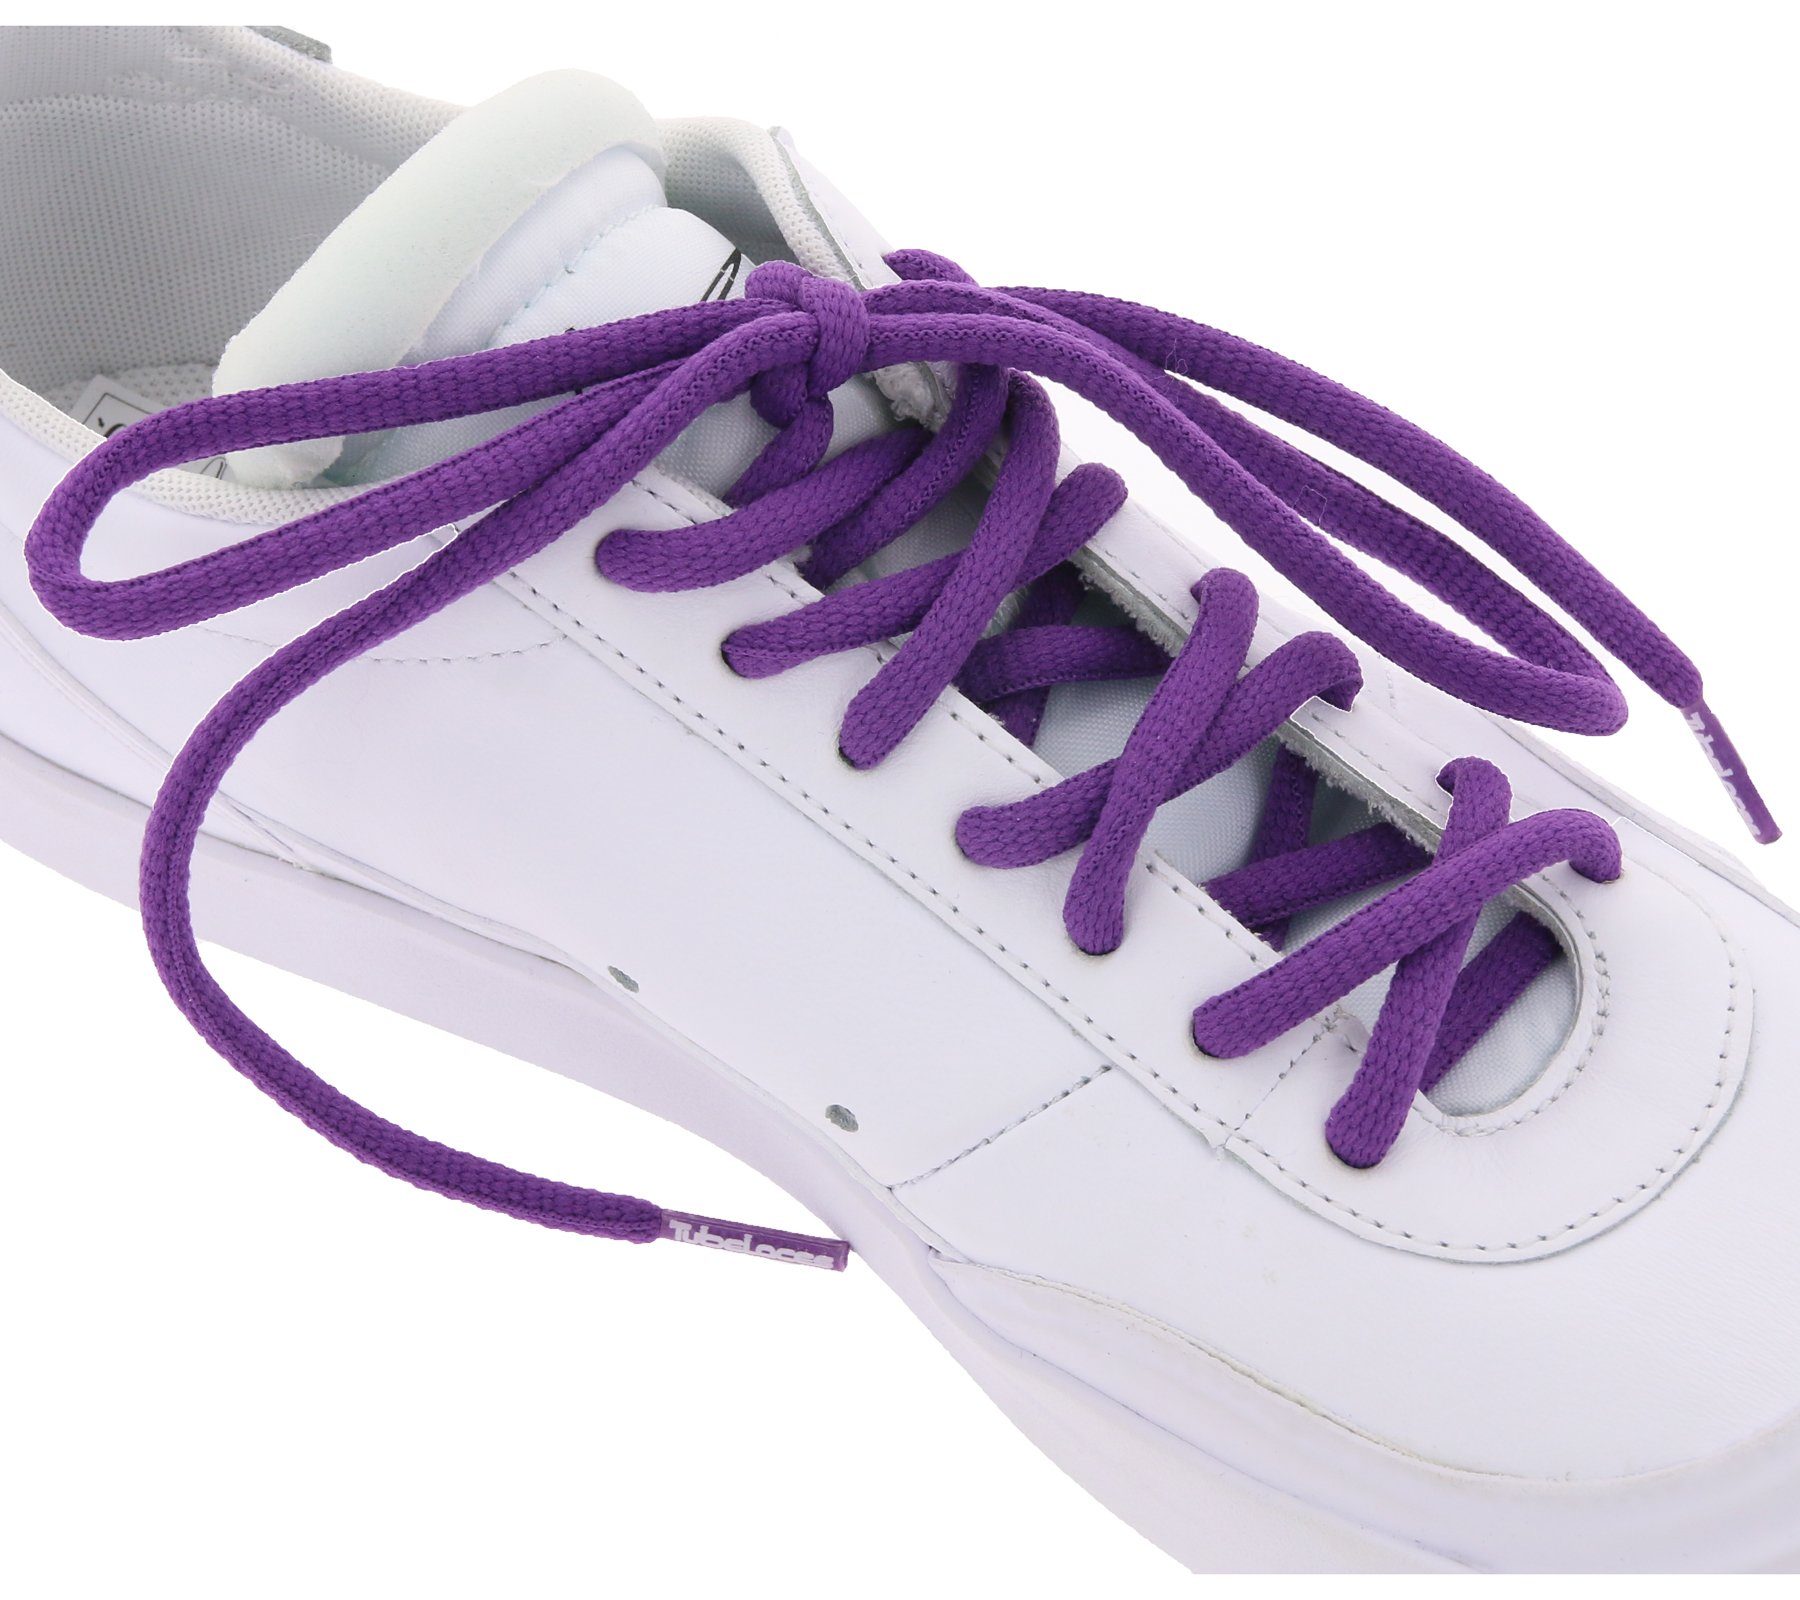 Tubelaces Schnürsenkel TubeLaces Schnürbänder coole Schuh Schnürsenkel Schuhbänder Violett | Schnürsenkel